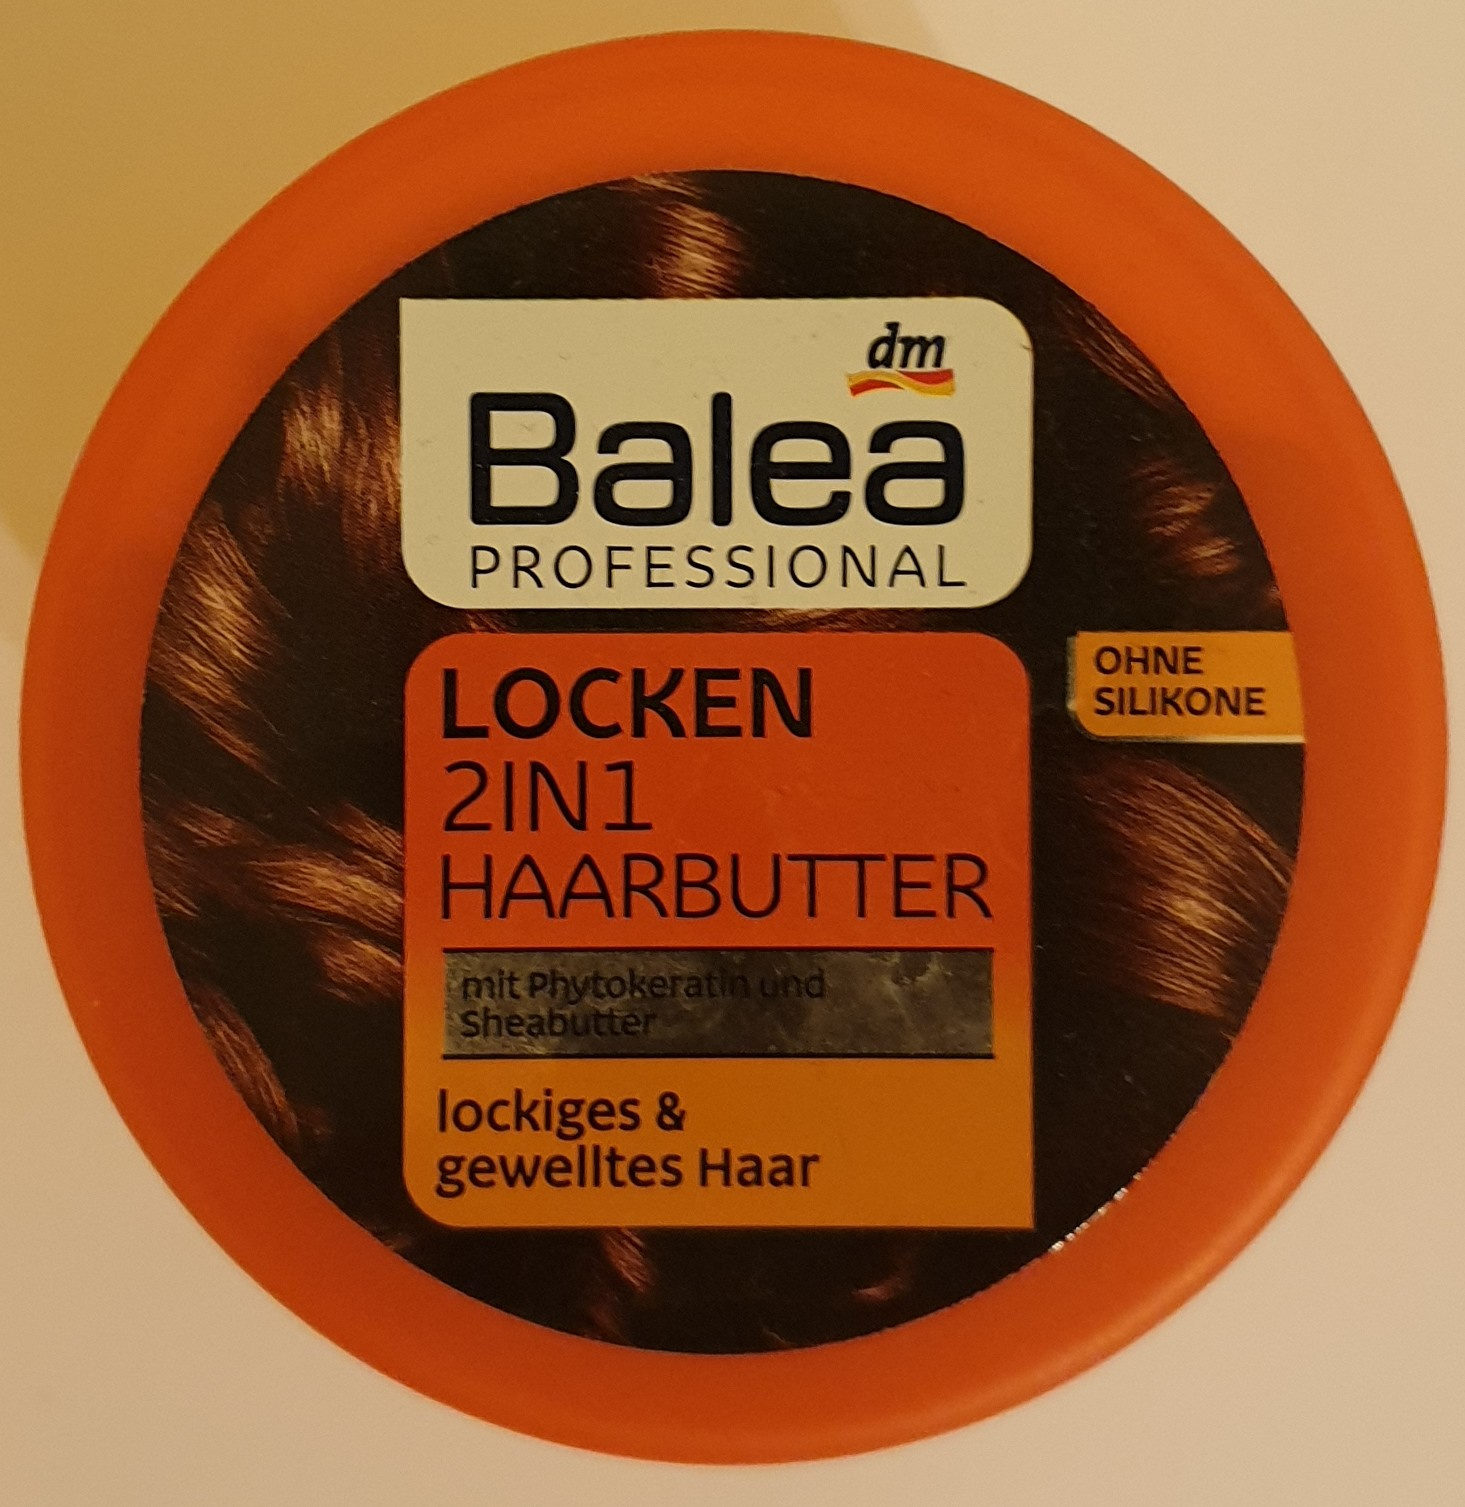 Locken 2in1 Haarbutter - 製品 - de